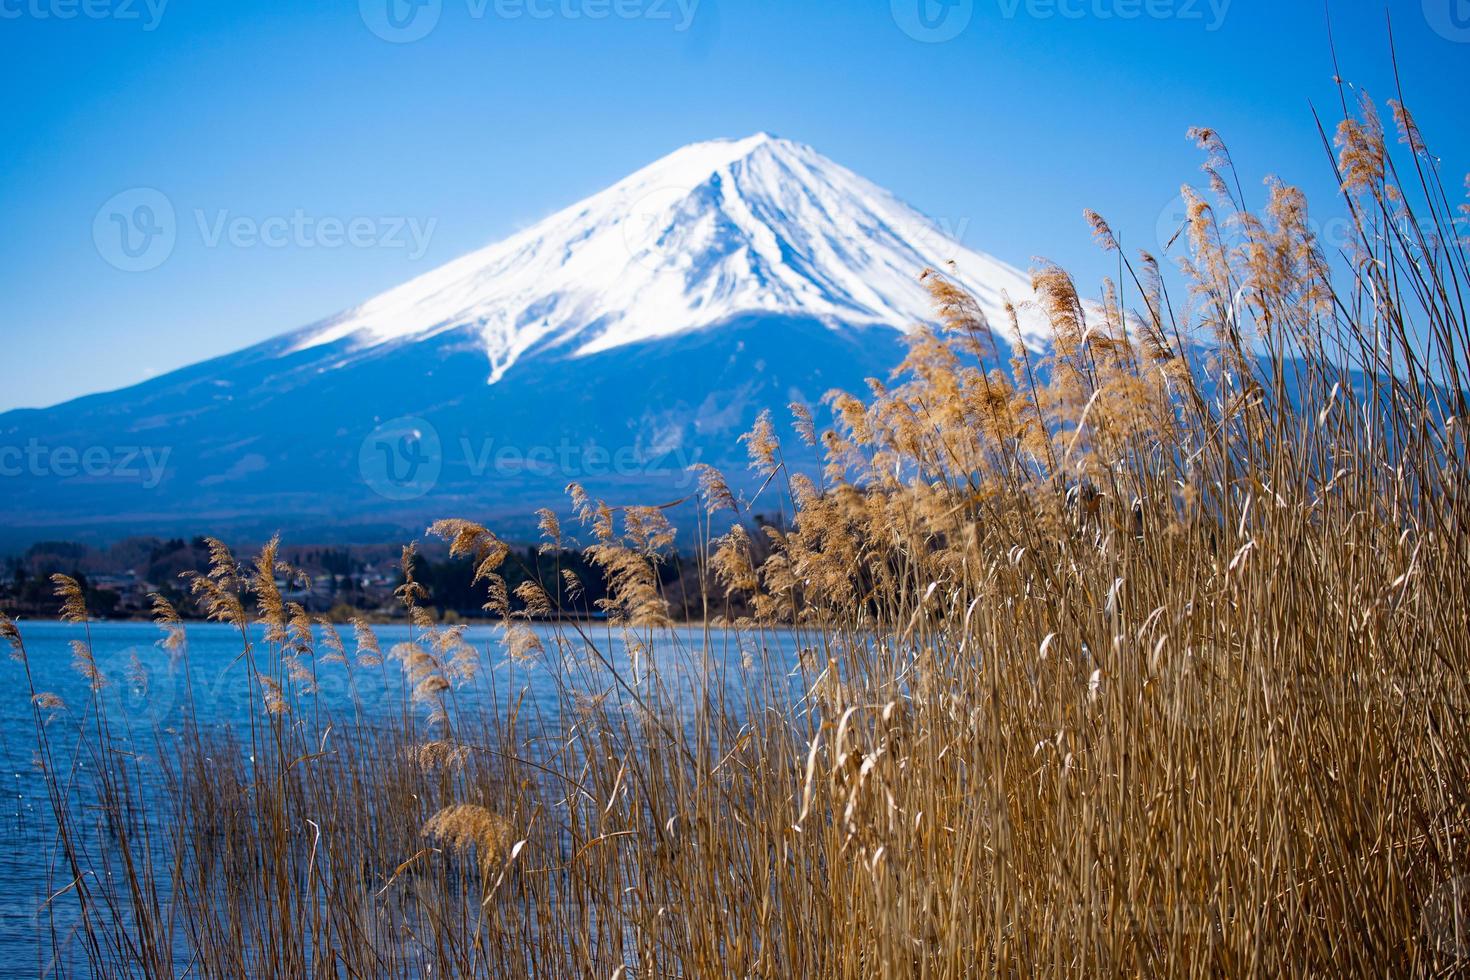 vackert landskap av Fujiberget och kawaguchisjön i april. japan. foto